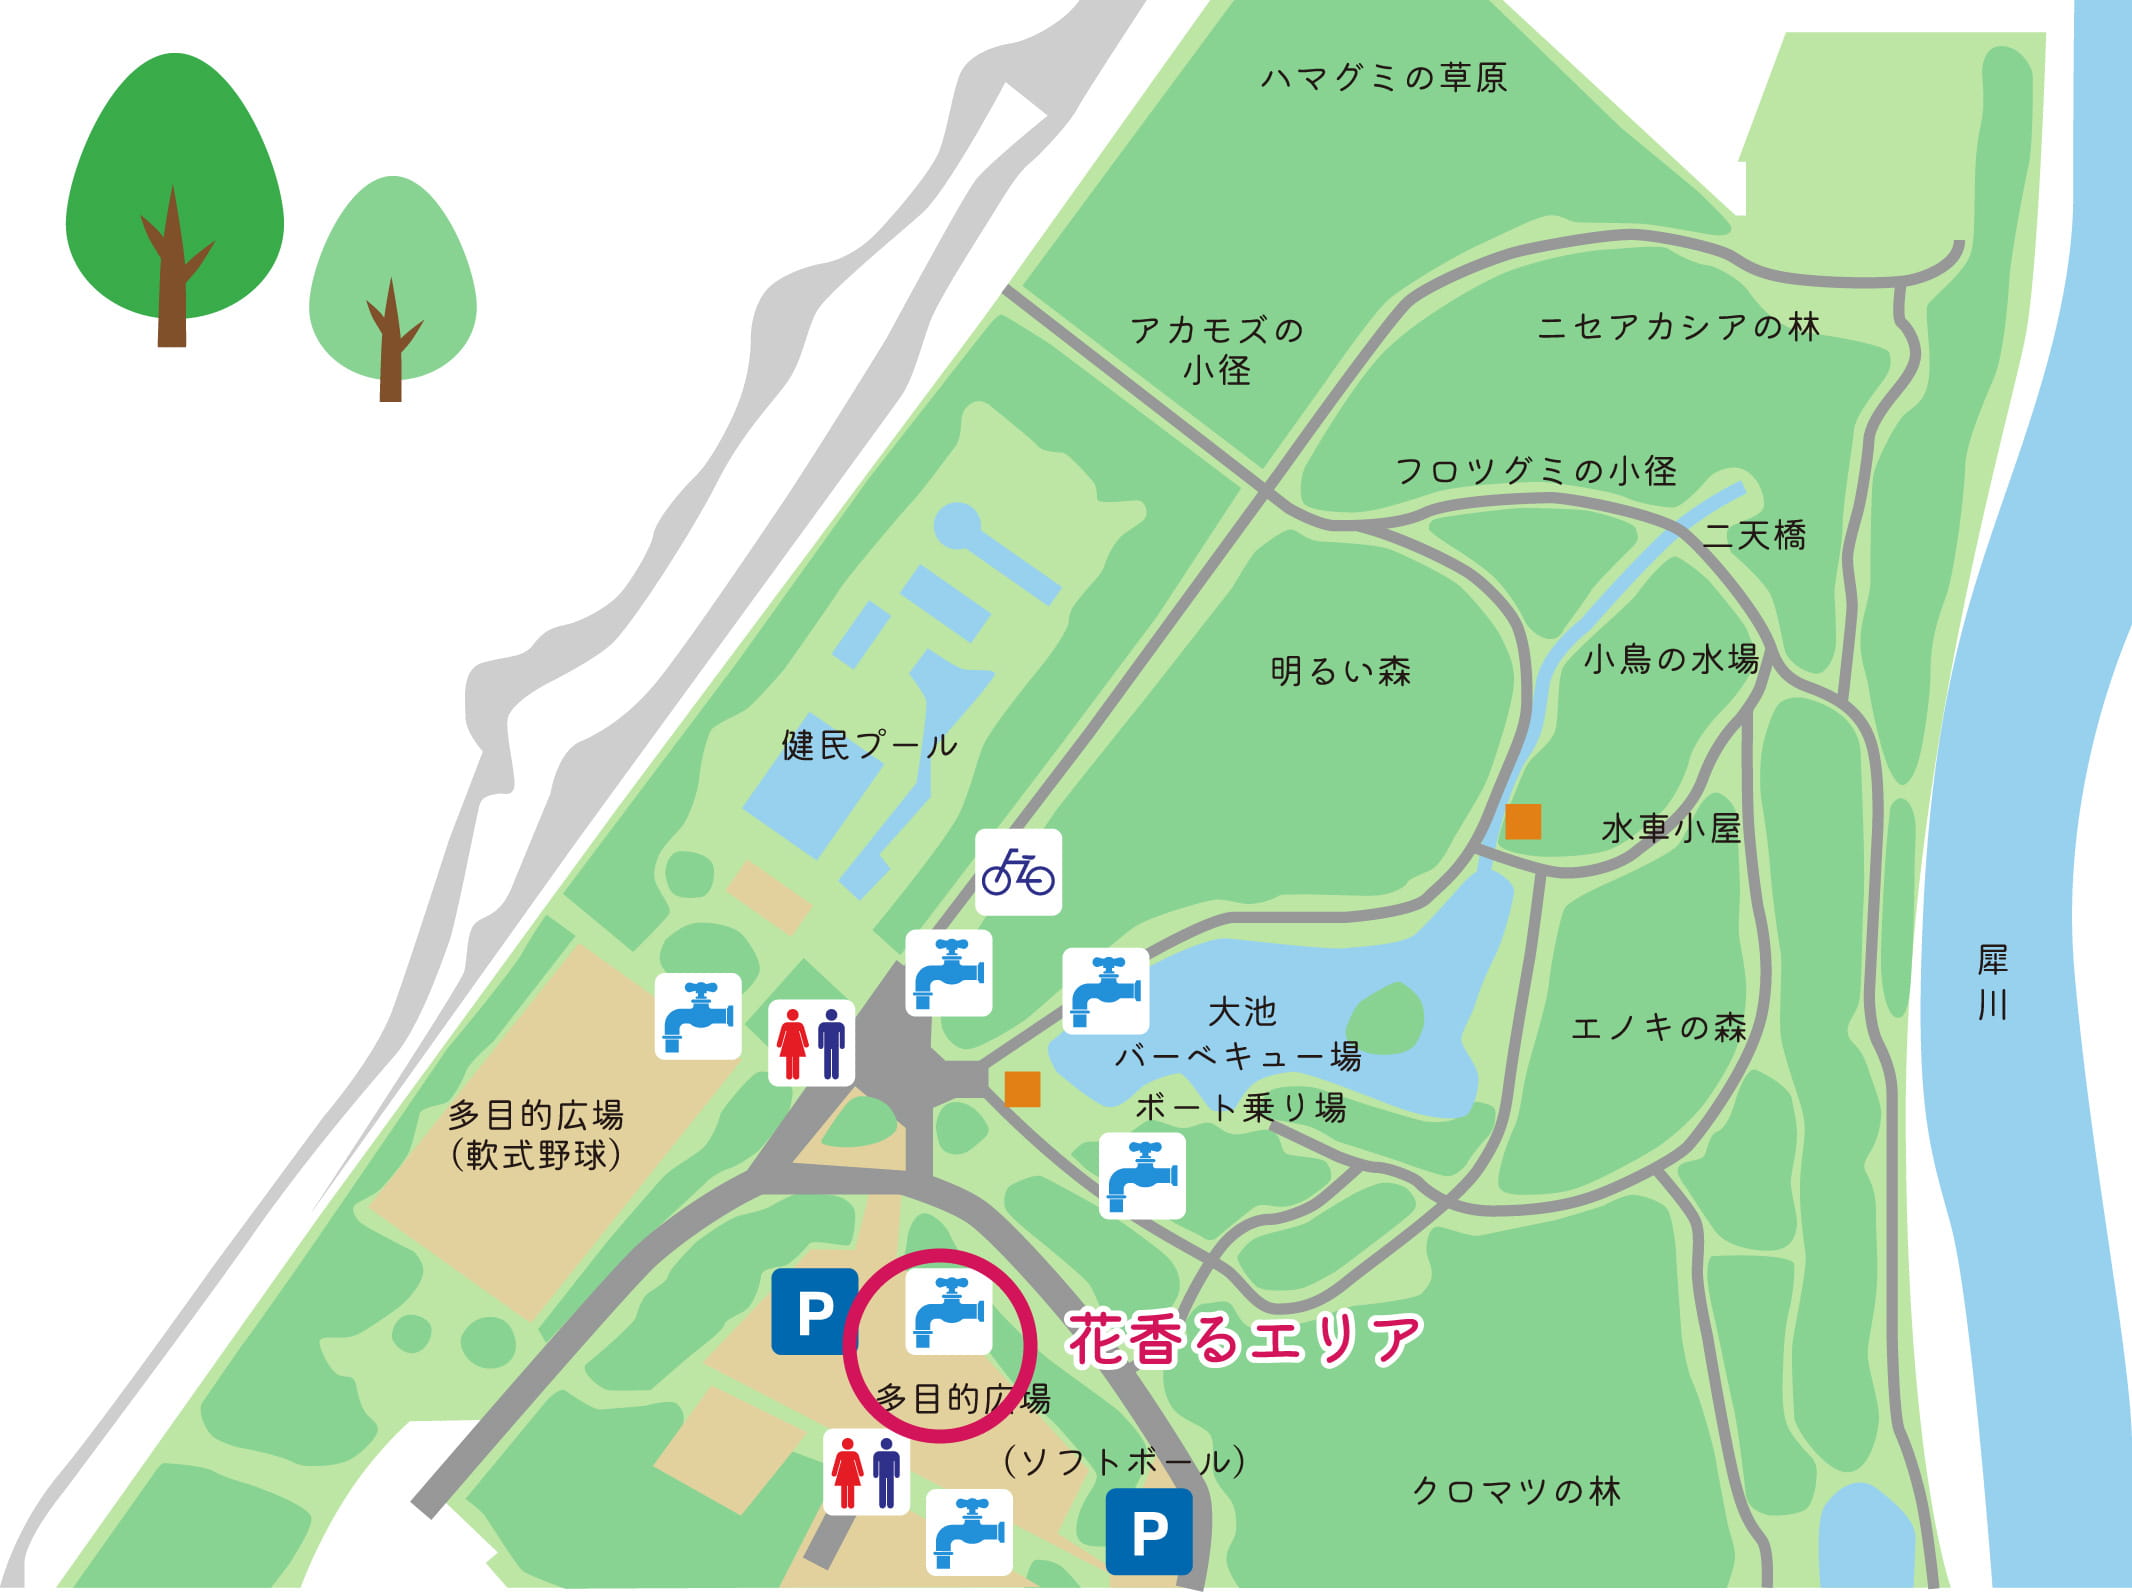 花香るエリアの場所を記した公園の地図